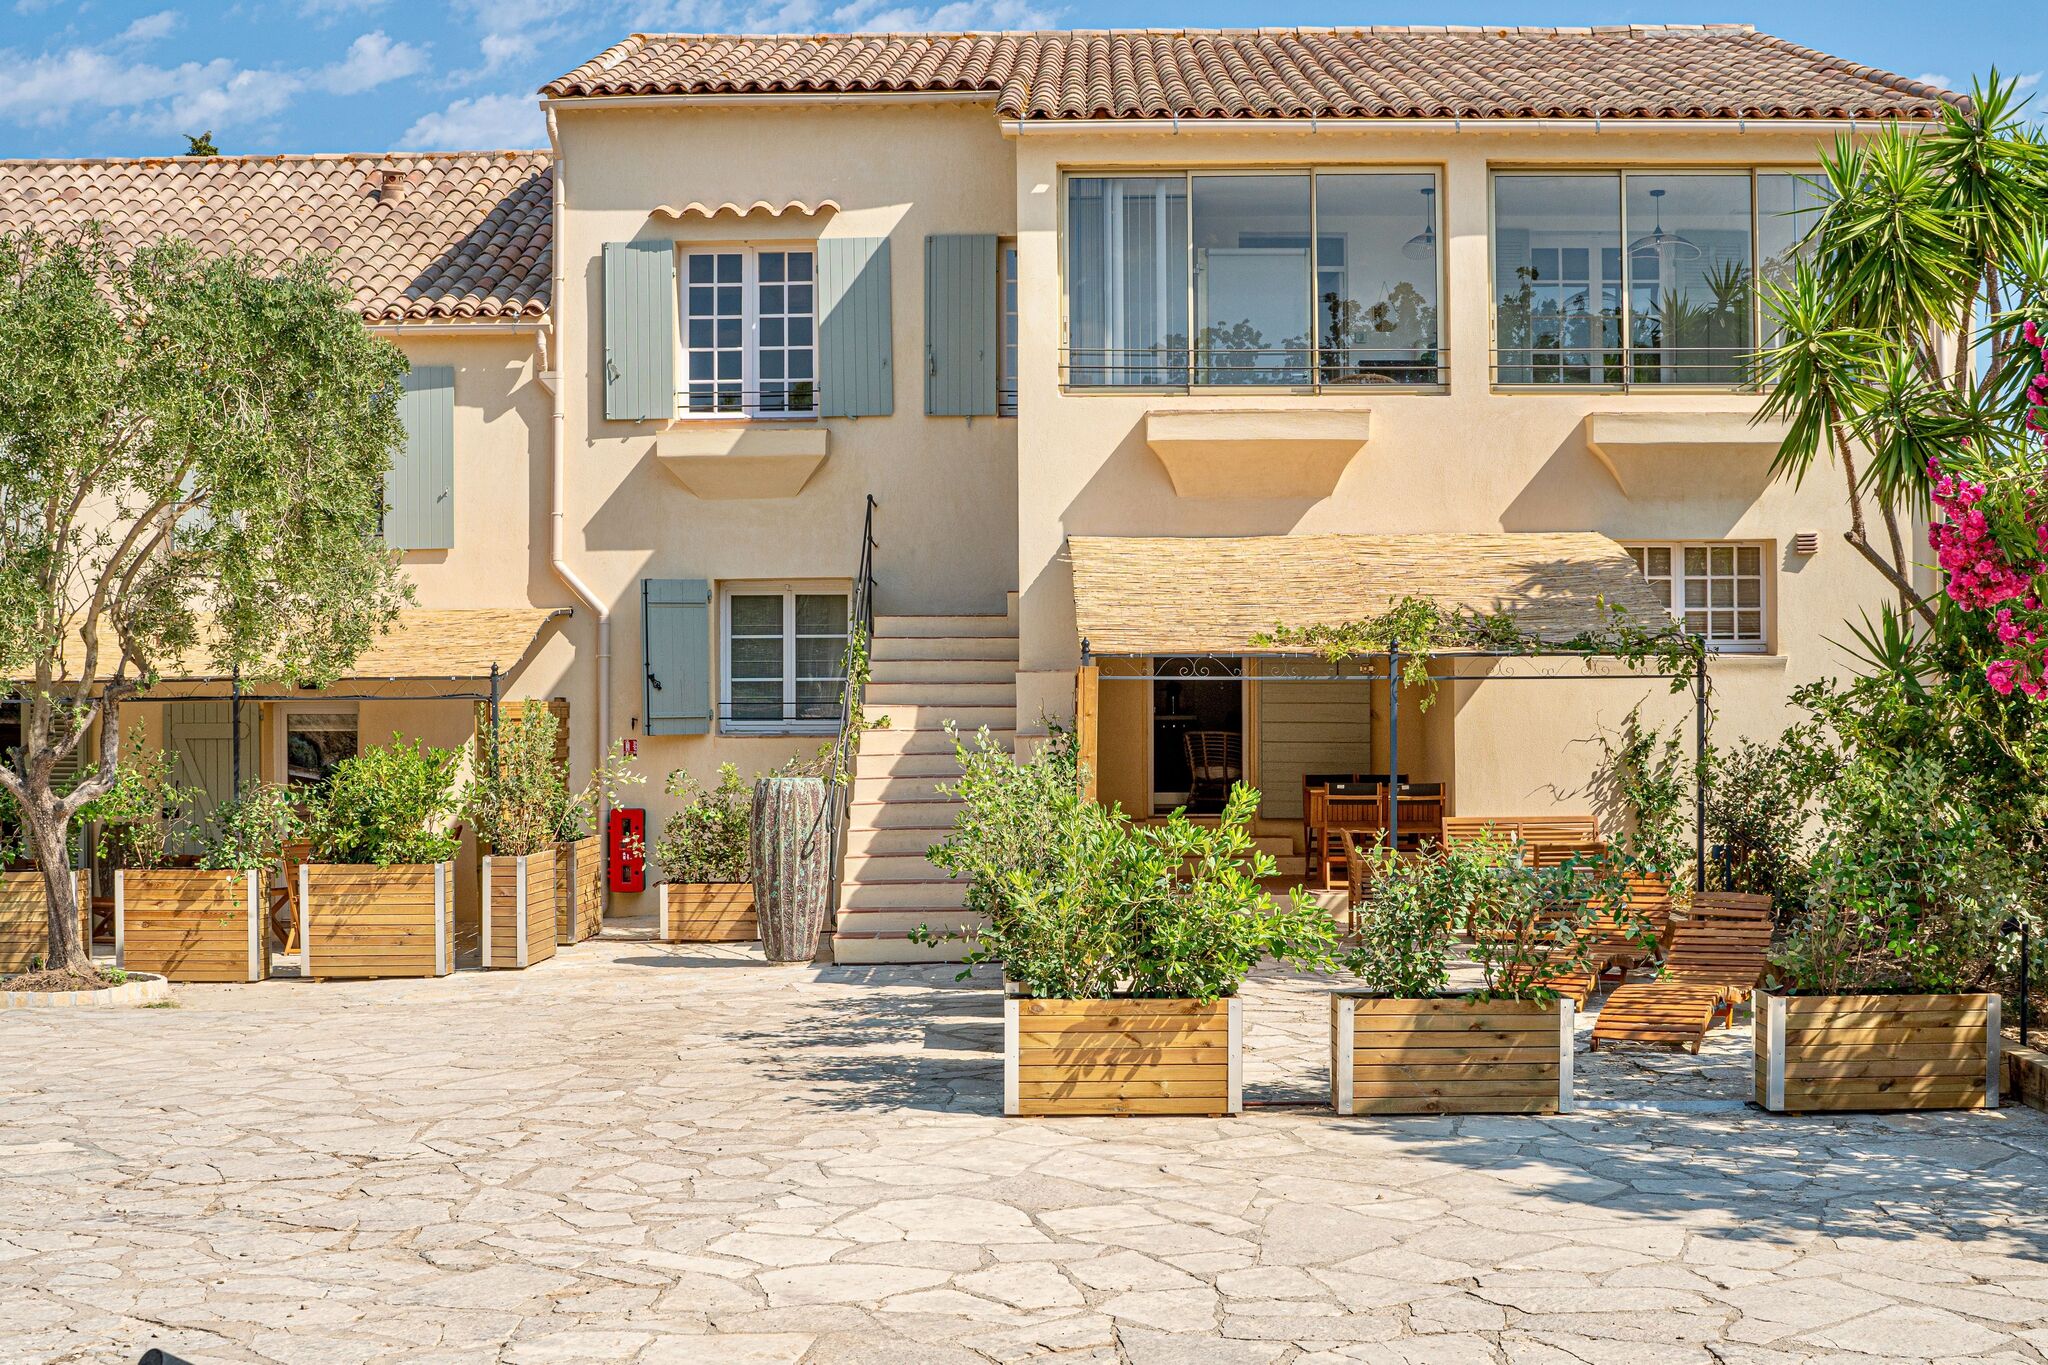 Appartement cozy à Provence-Alpes-Côte dAzur dans un quartier charmant